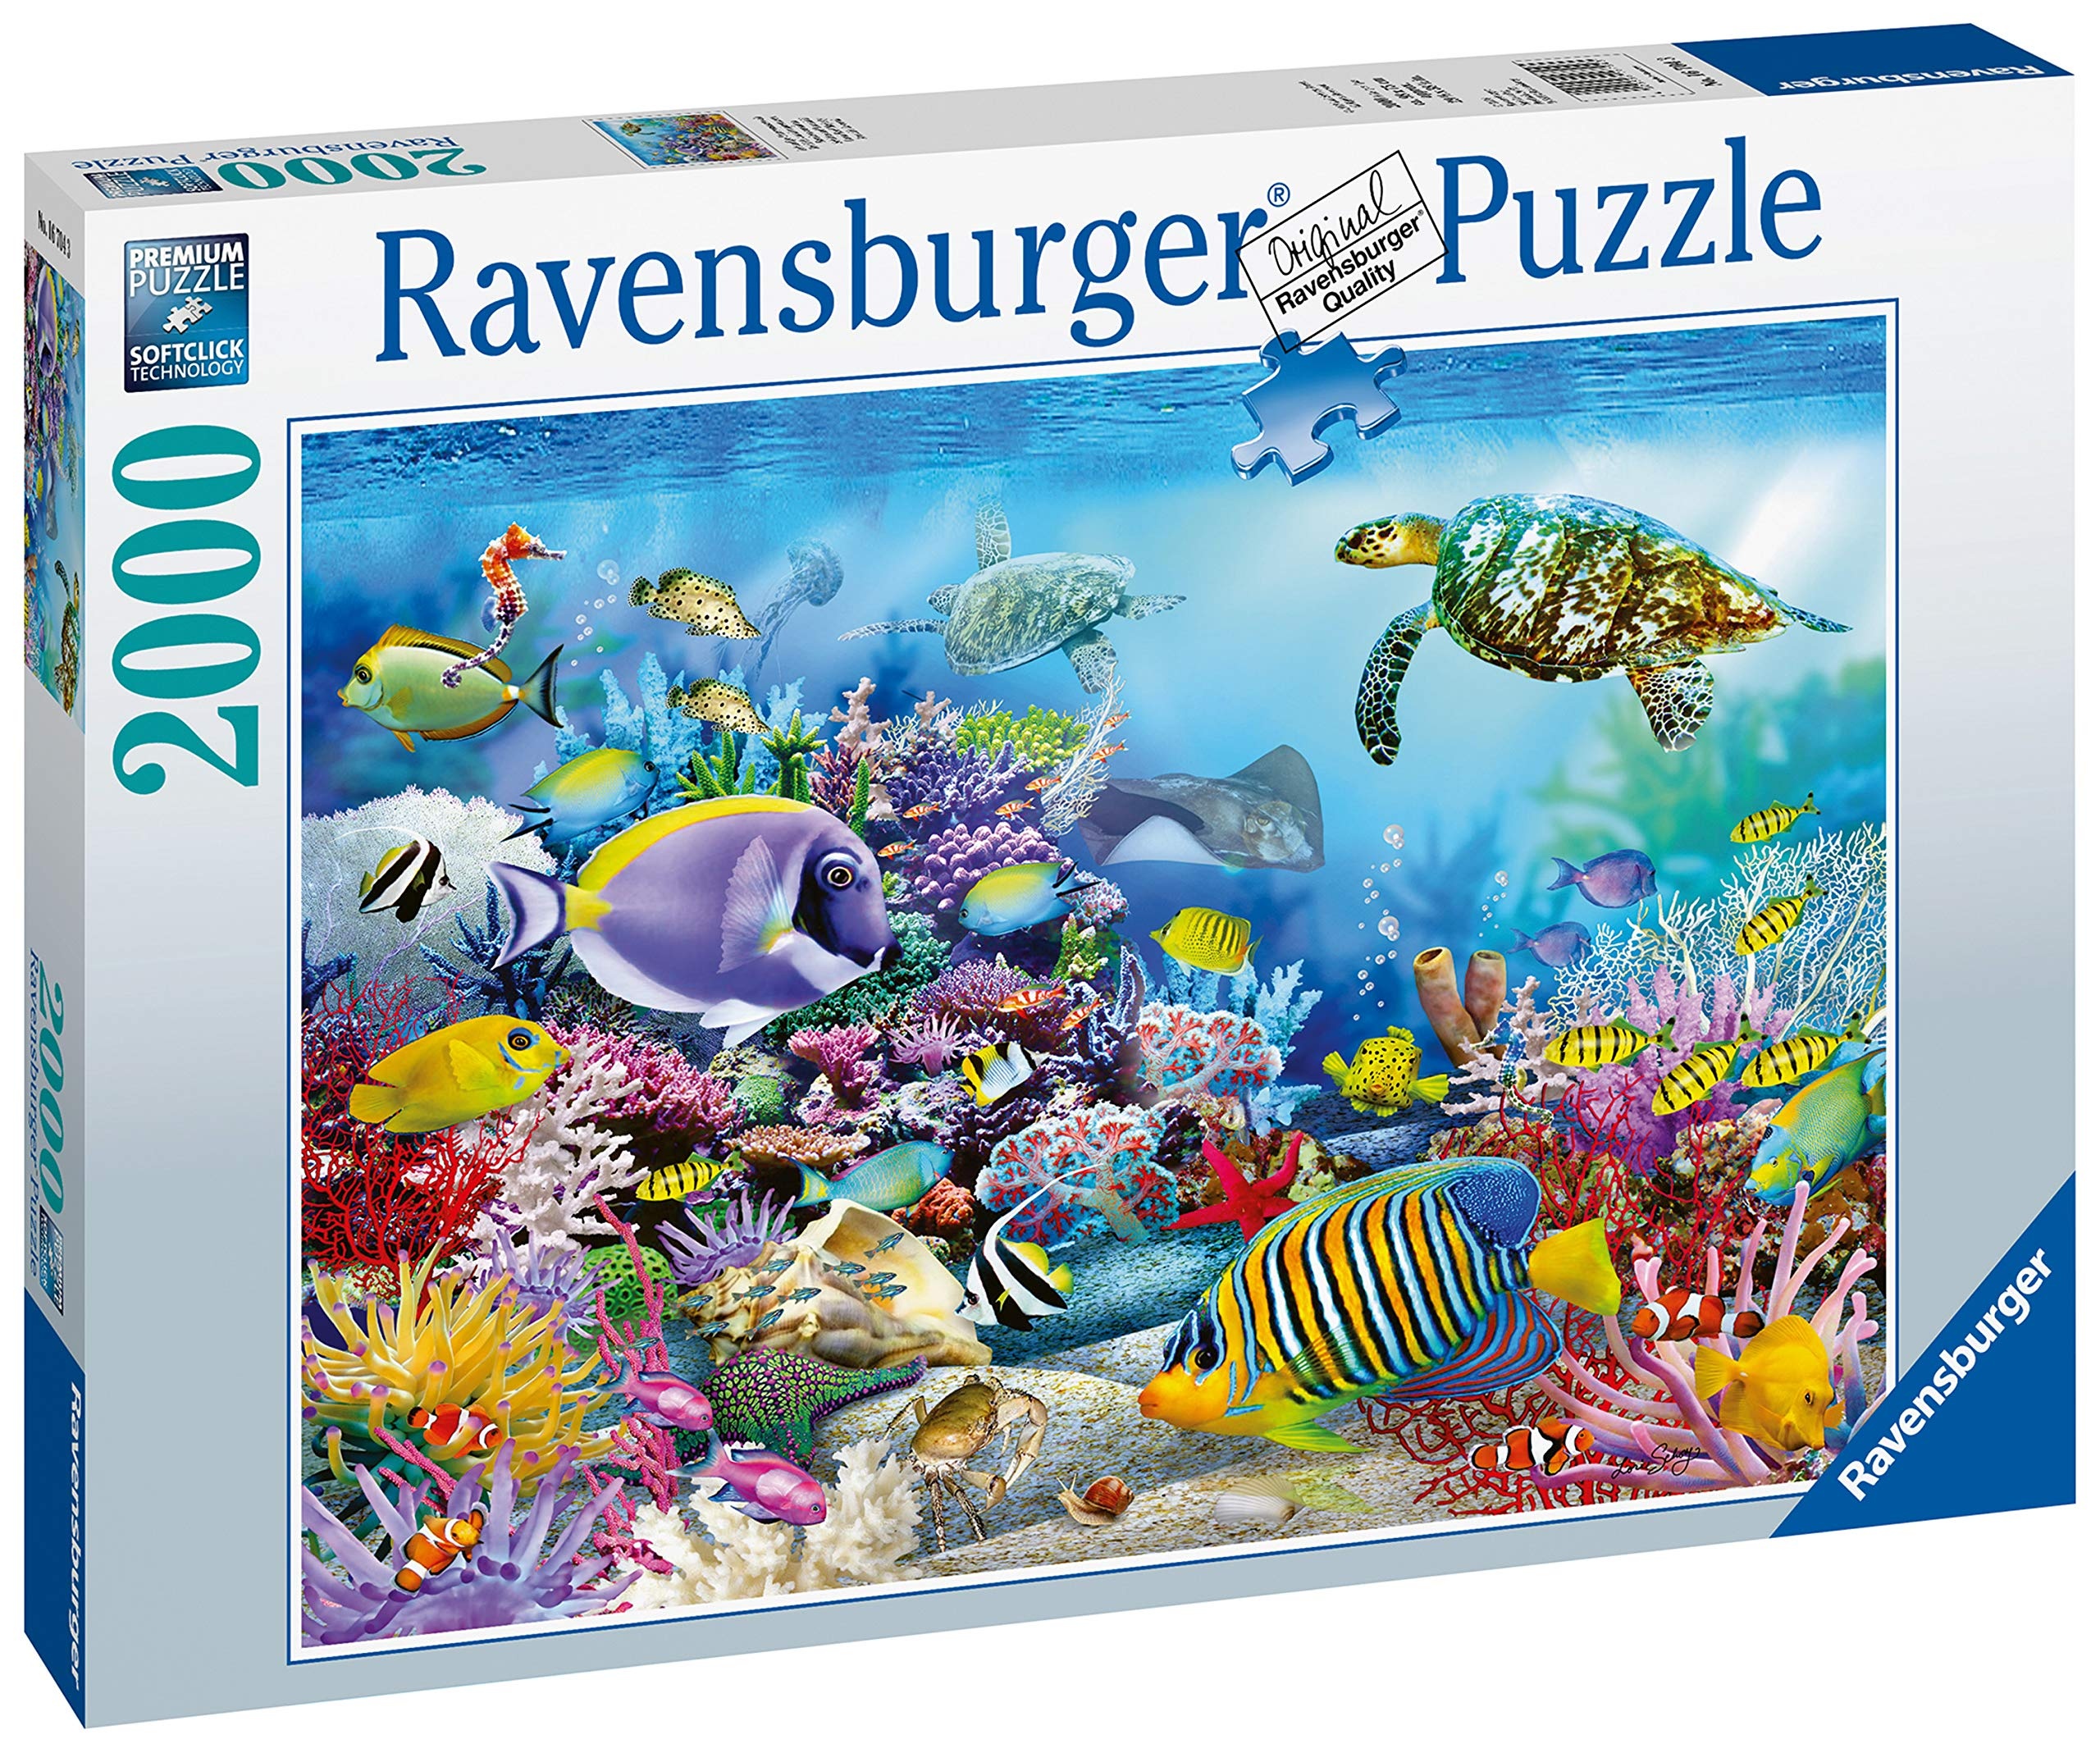 Ravensburger Puzzle 16704 - Lebendige Unterwasserwelt [2.000 Teile] (Neu differenzbesteuert)